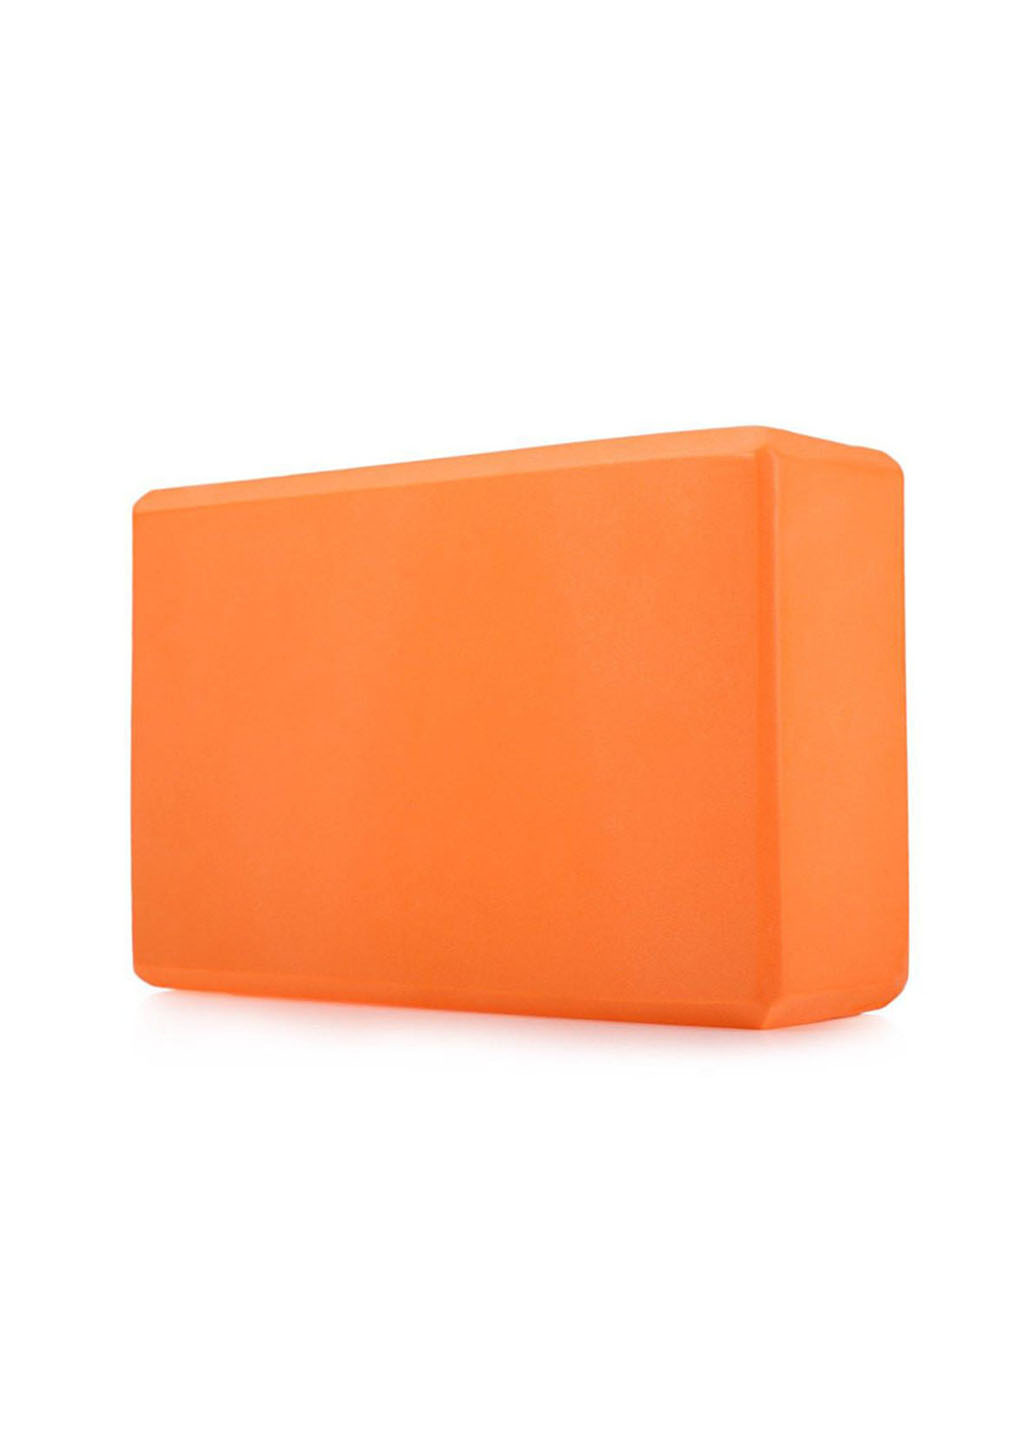 Блок для йоги (йога блок, кирпич для йоги) оранжевый EasyFit (236530219)